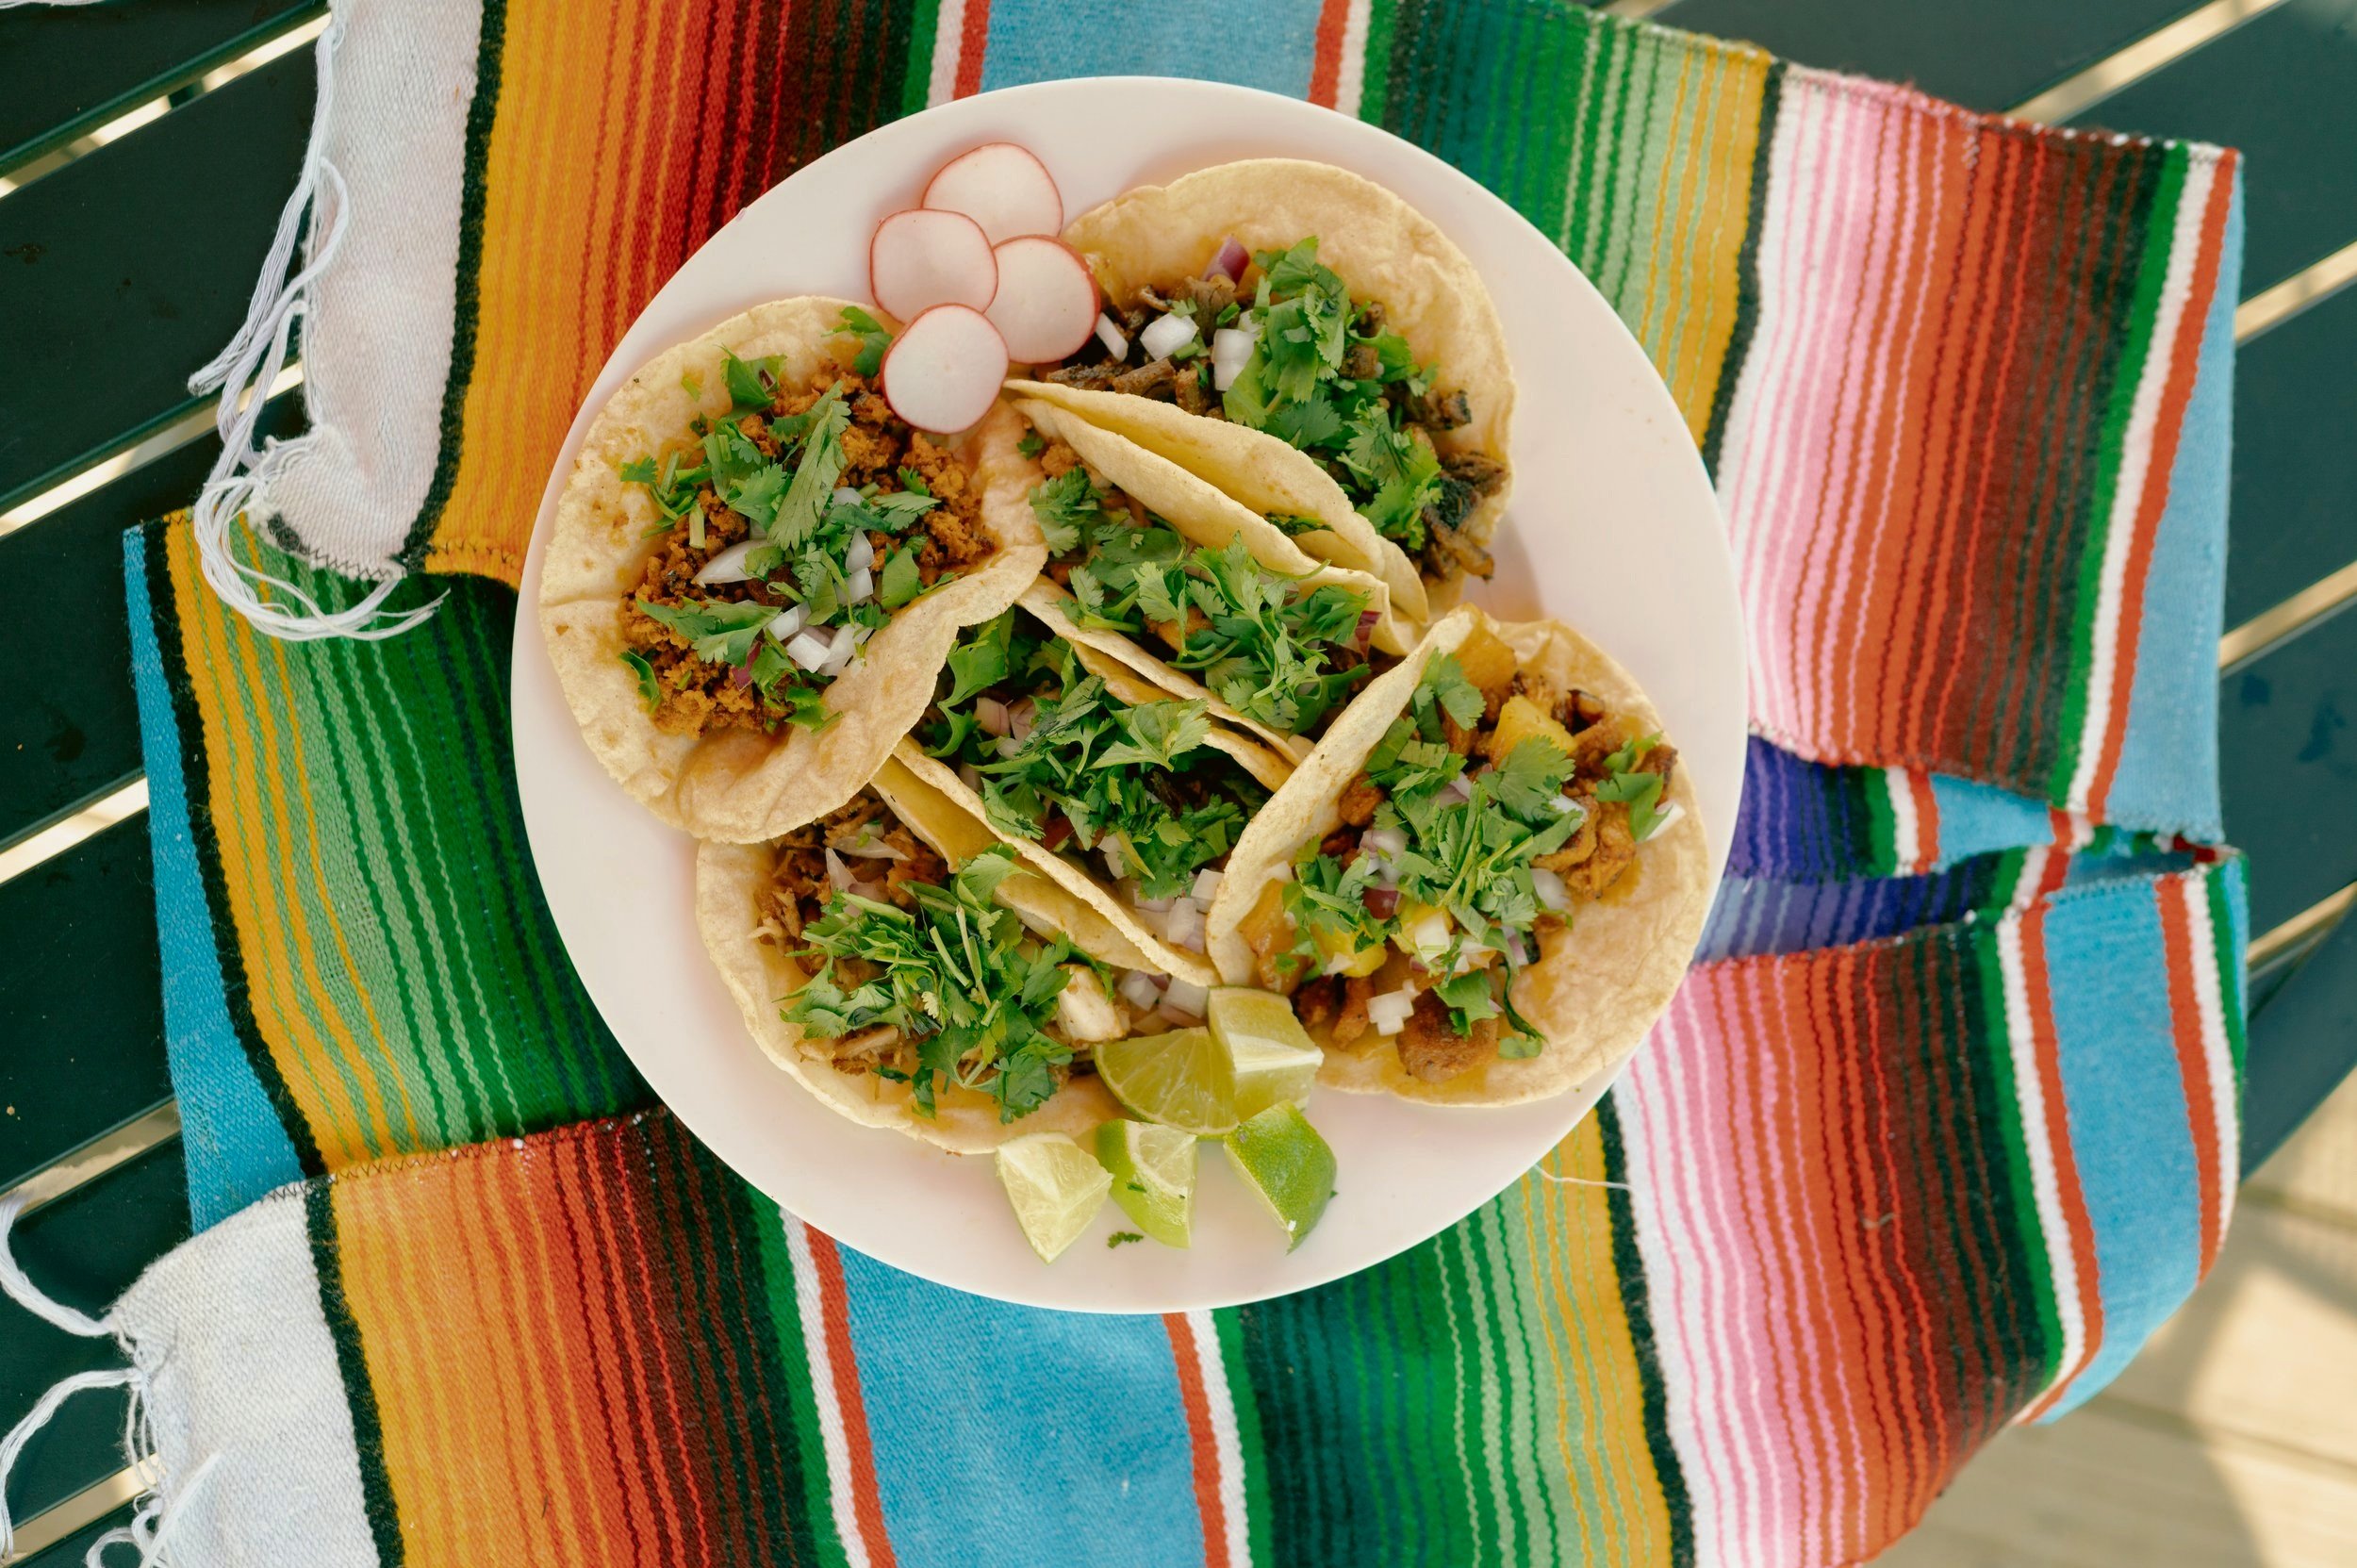 Ranchero Tacos